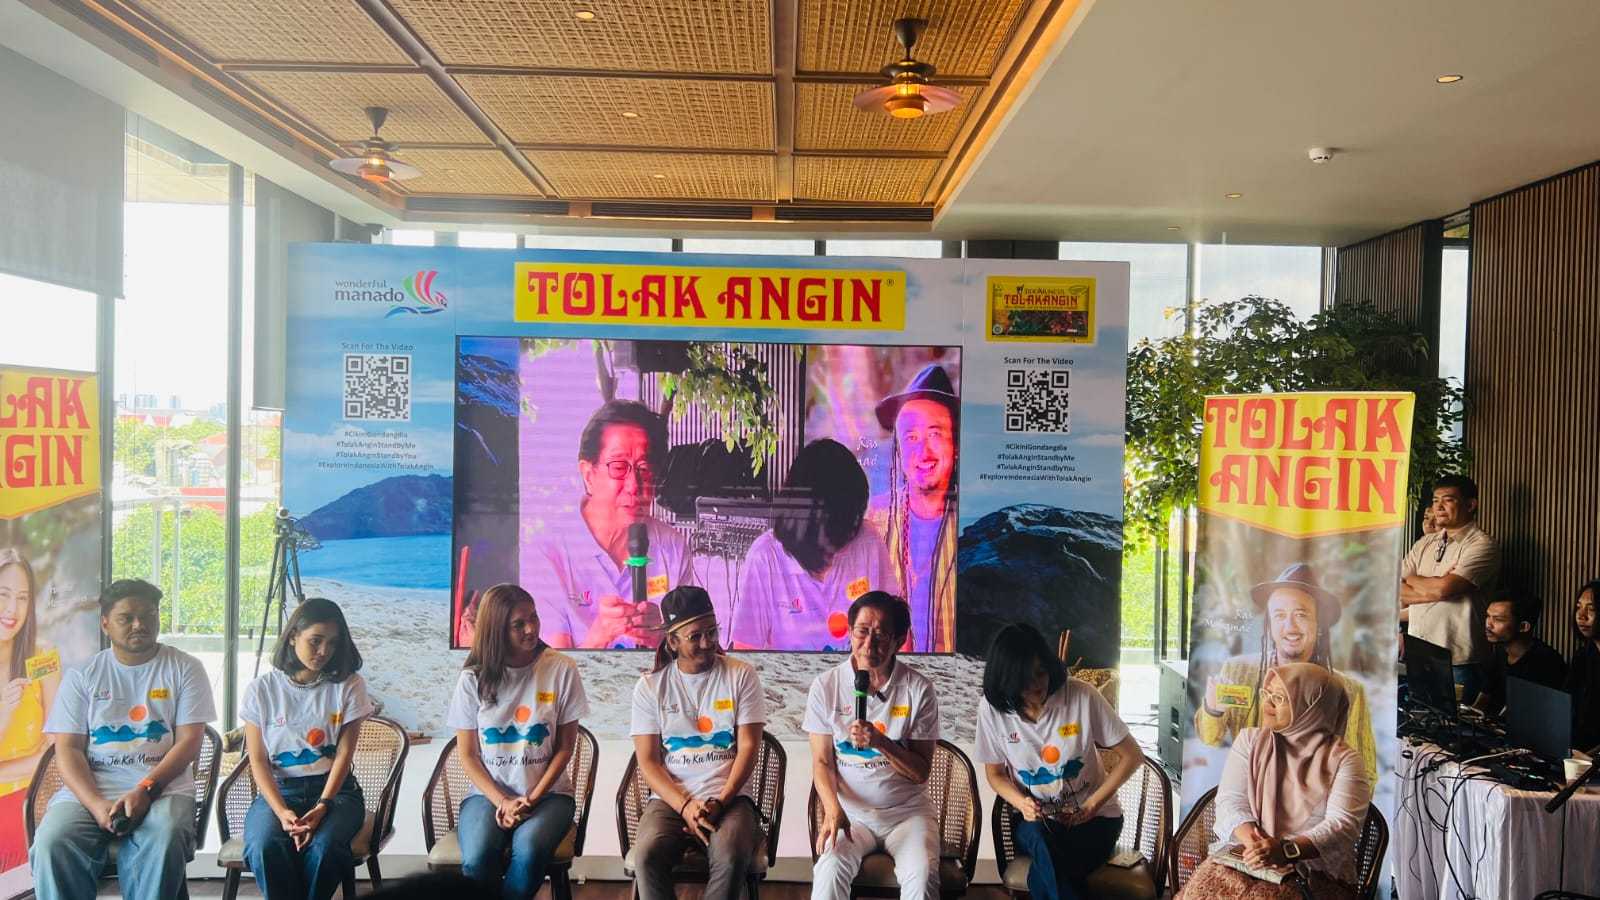 Perkenalkan Manado, Produsen Jamu Ini Luncurkan Iklan Pariwisata Video Musik